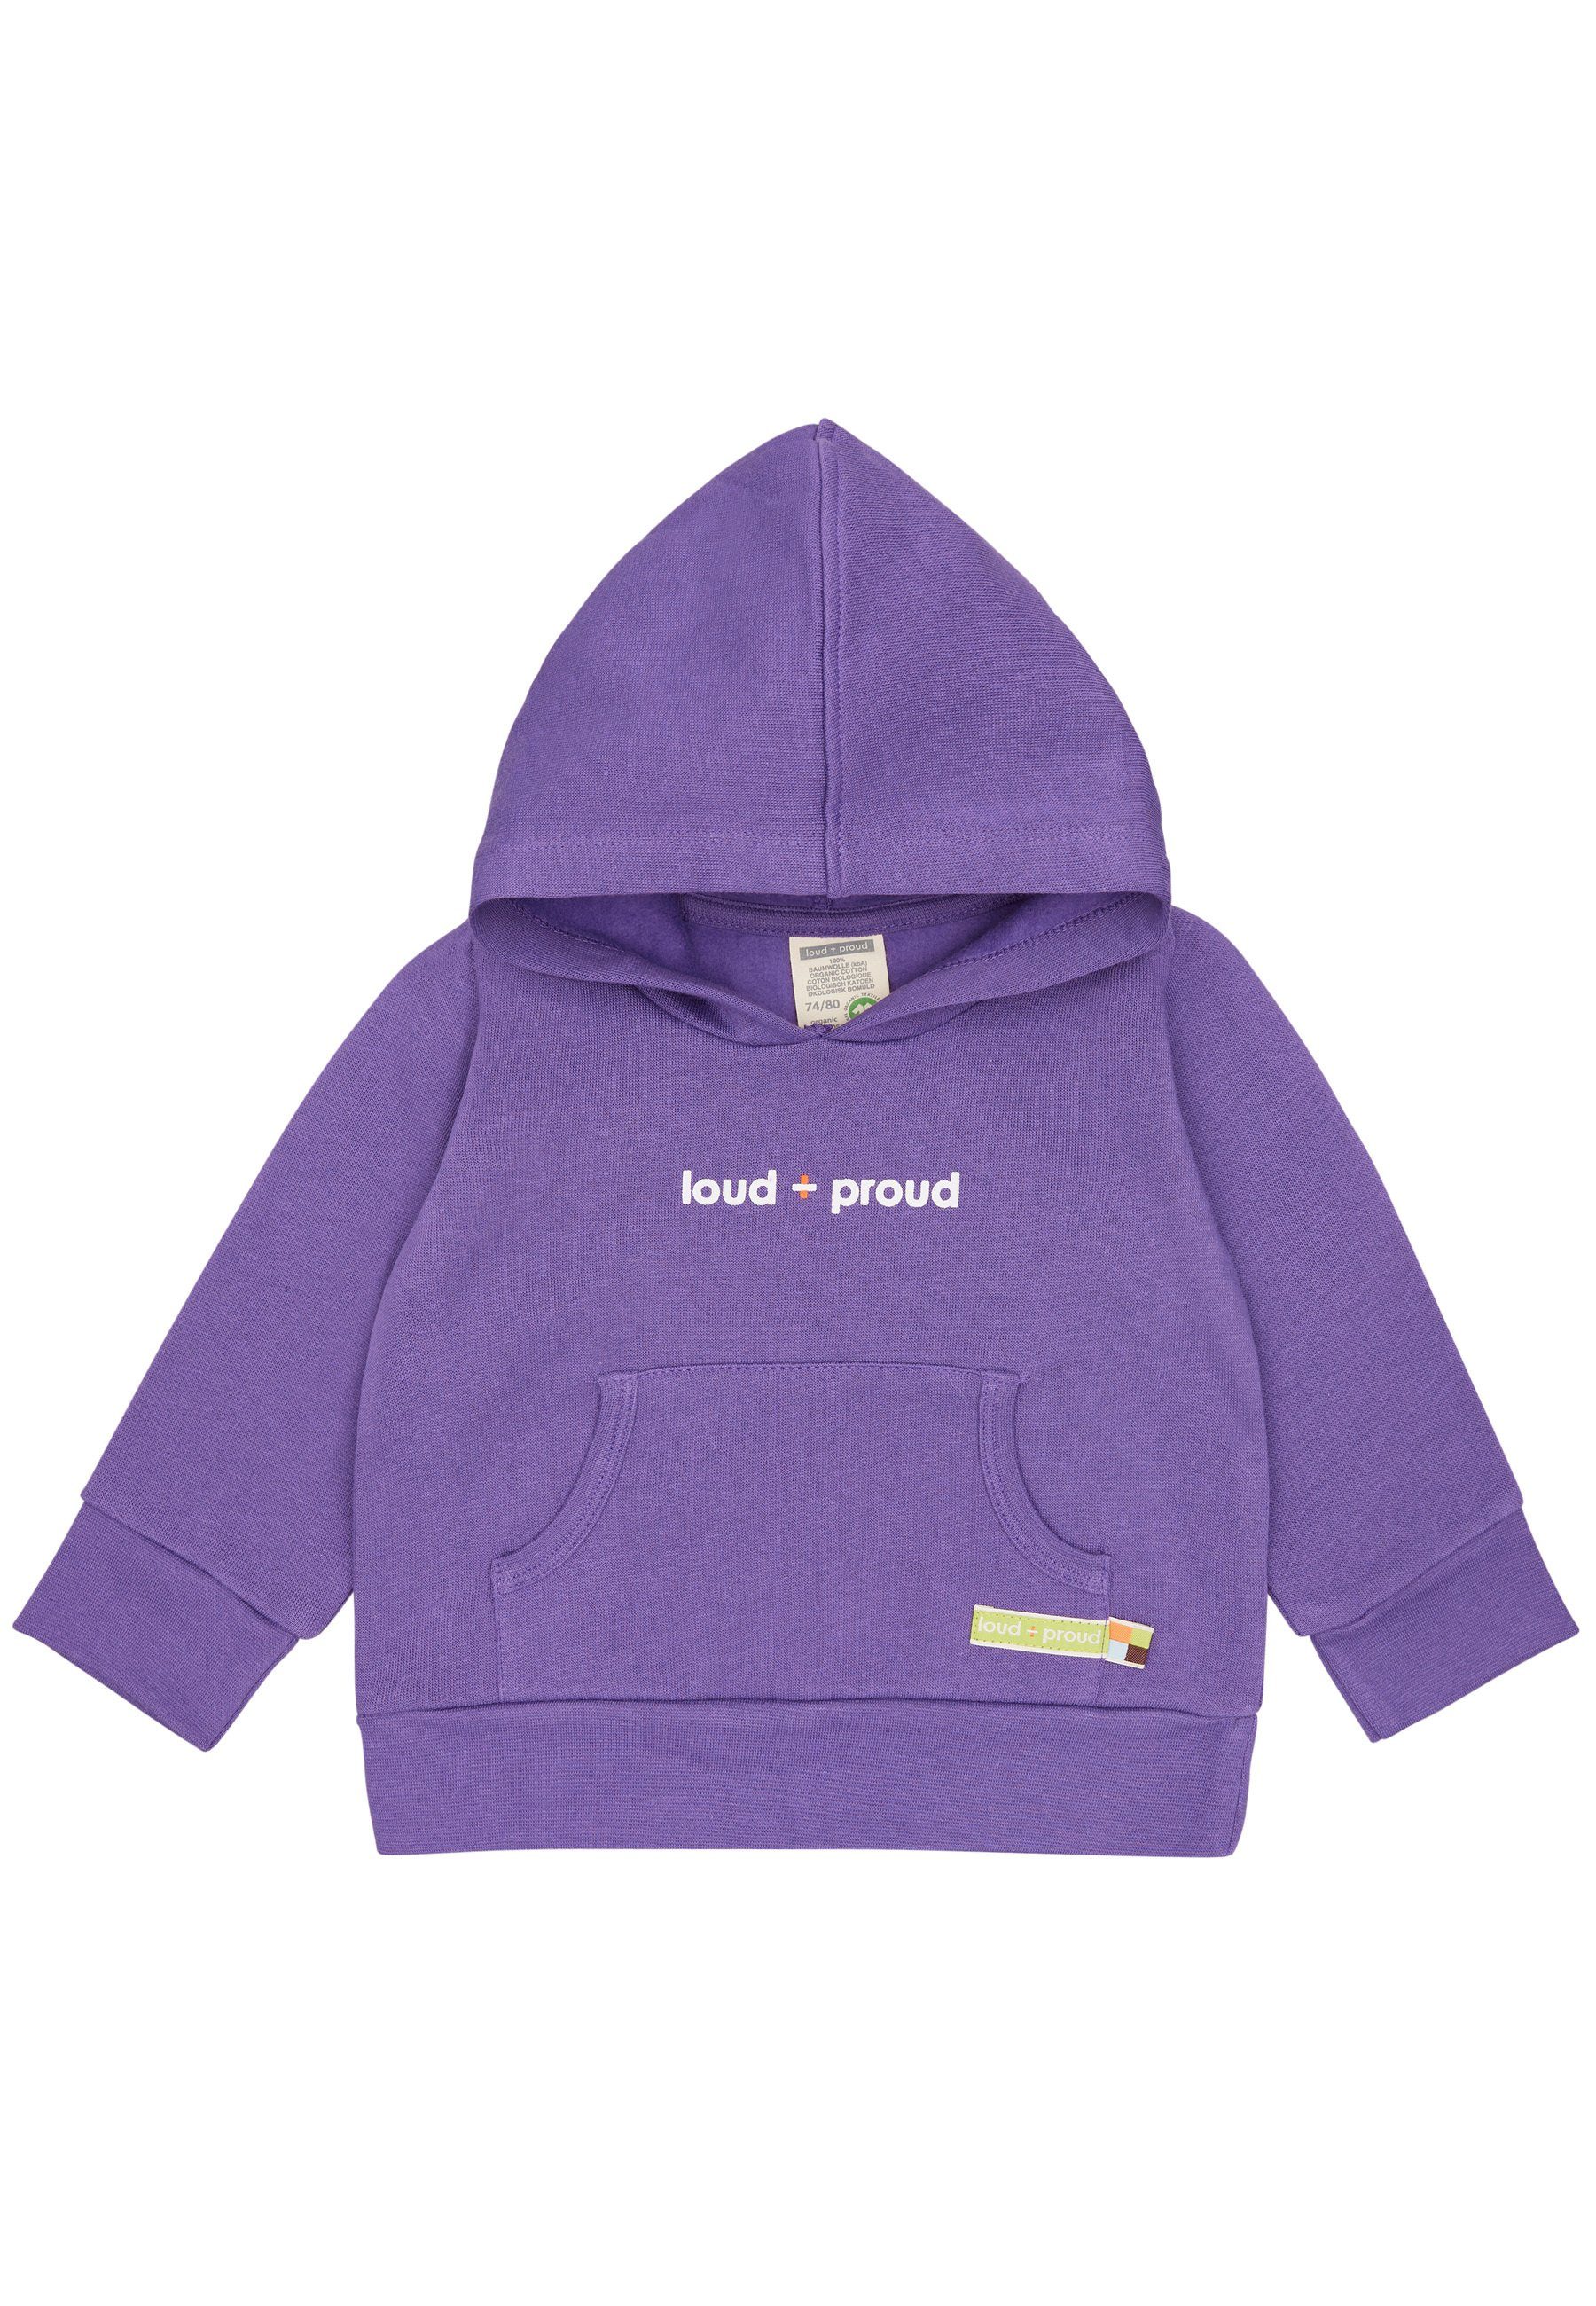 loud + proud Hoodie GOTS violet Bio-Baumwolle zertifizierte